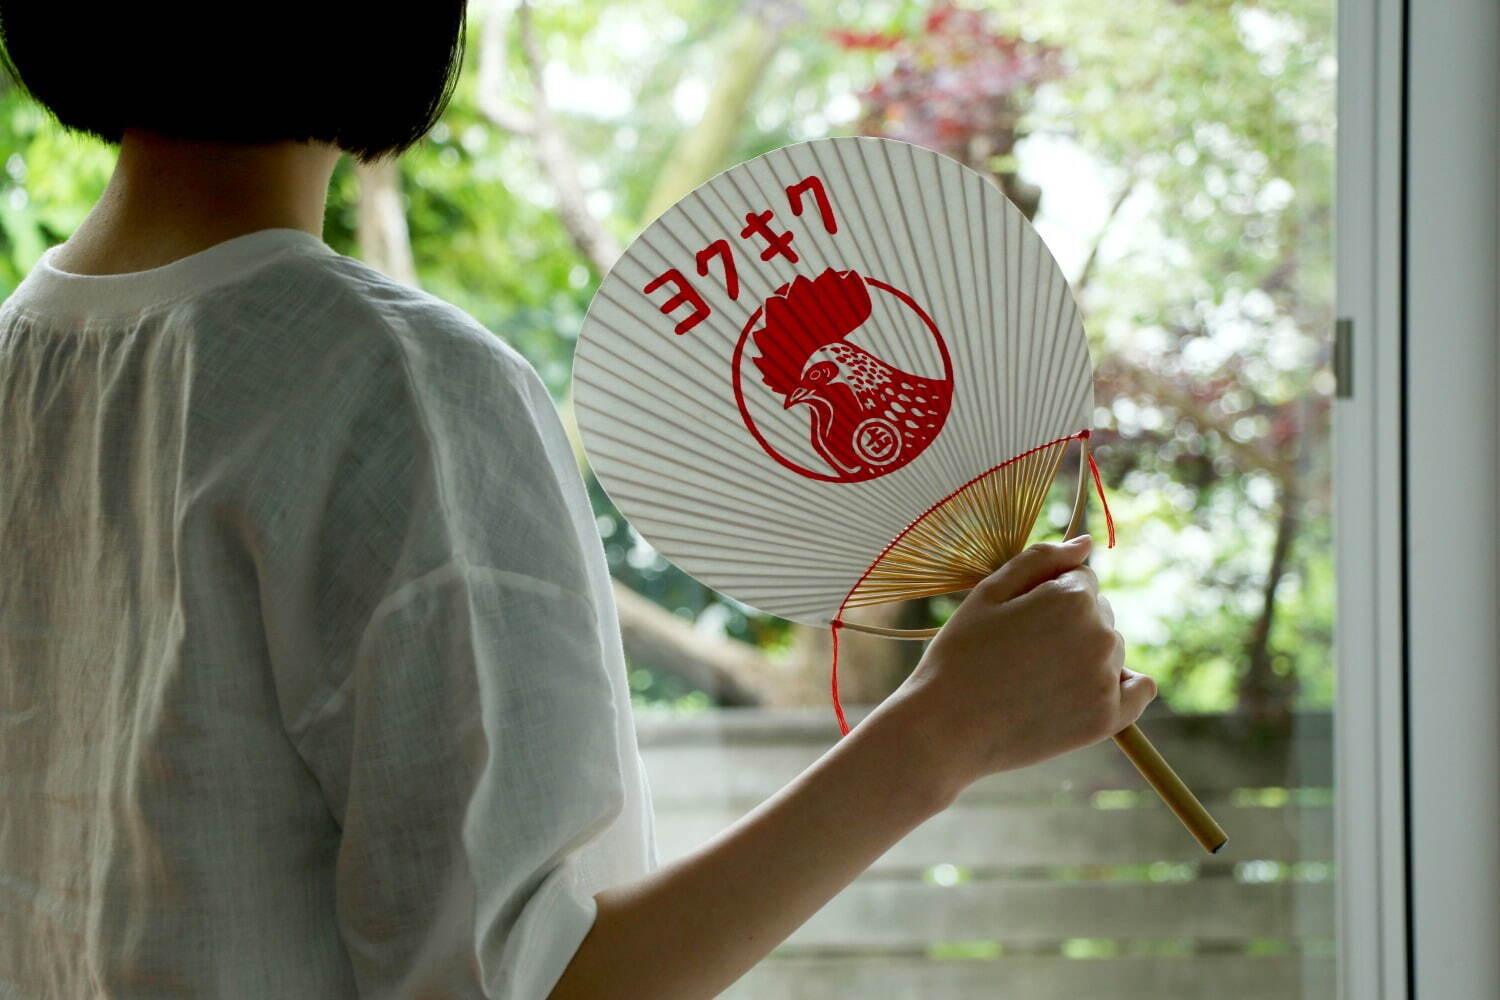 金鳥の夏日本の夏 手刷り丸竹うちわ 2,750円